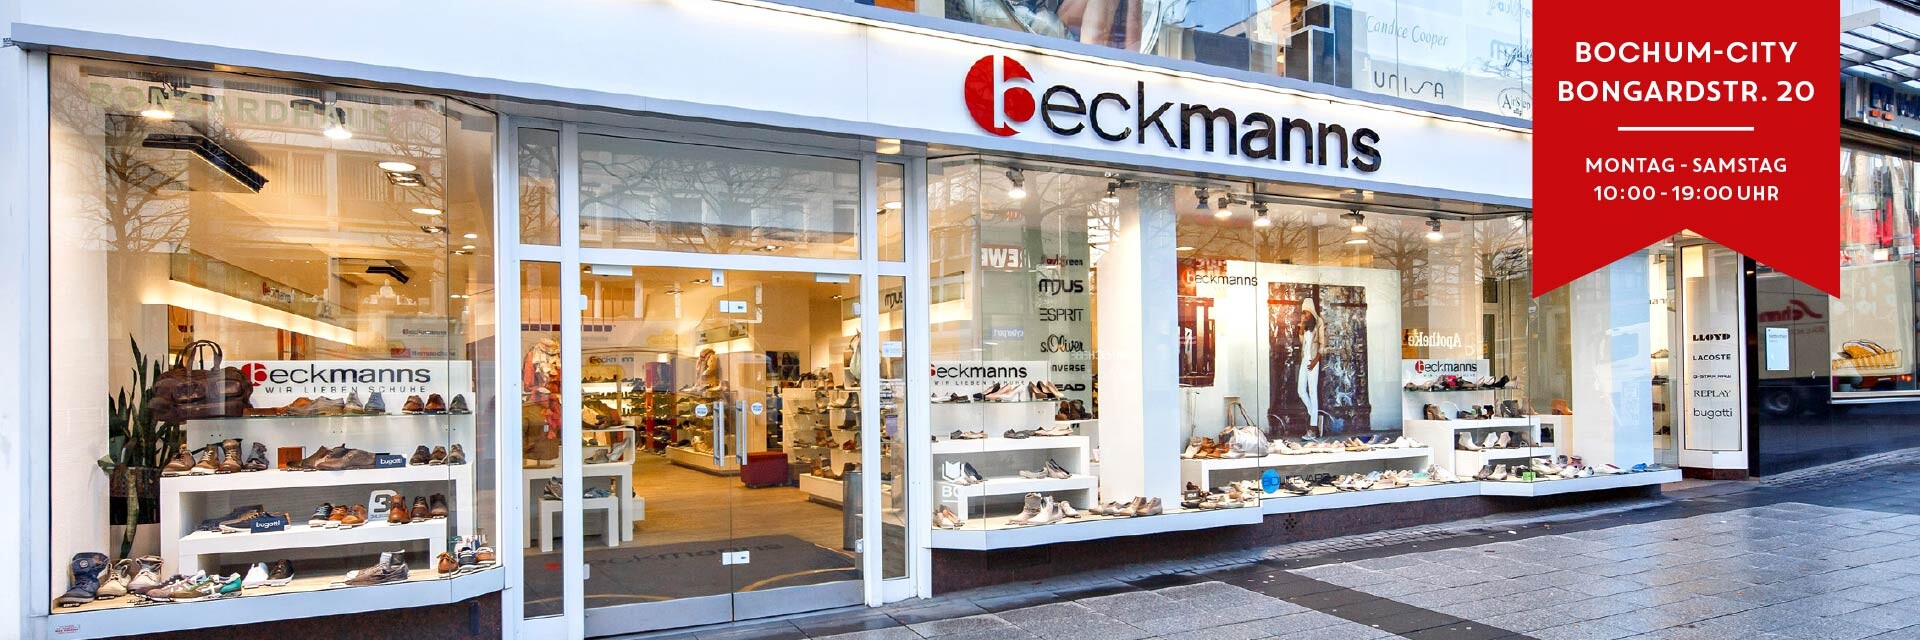 Beckmanns heißt Sie herzlich willkommen!